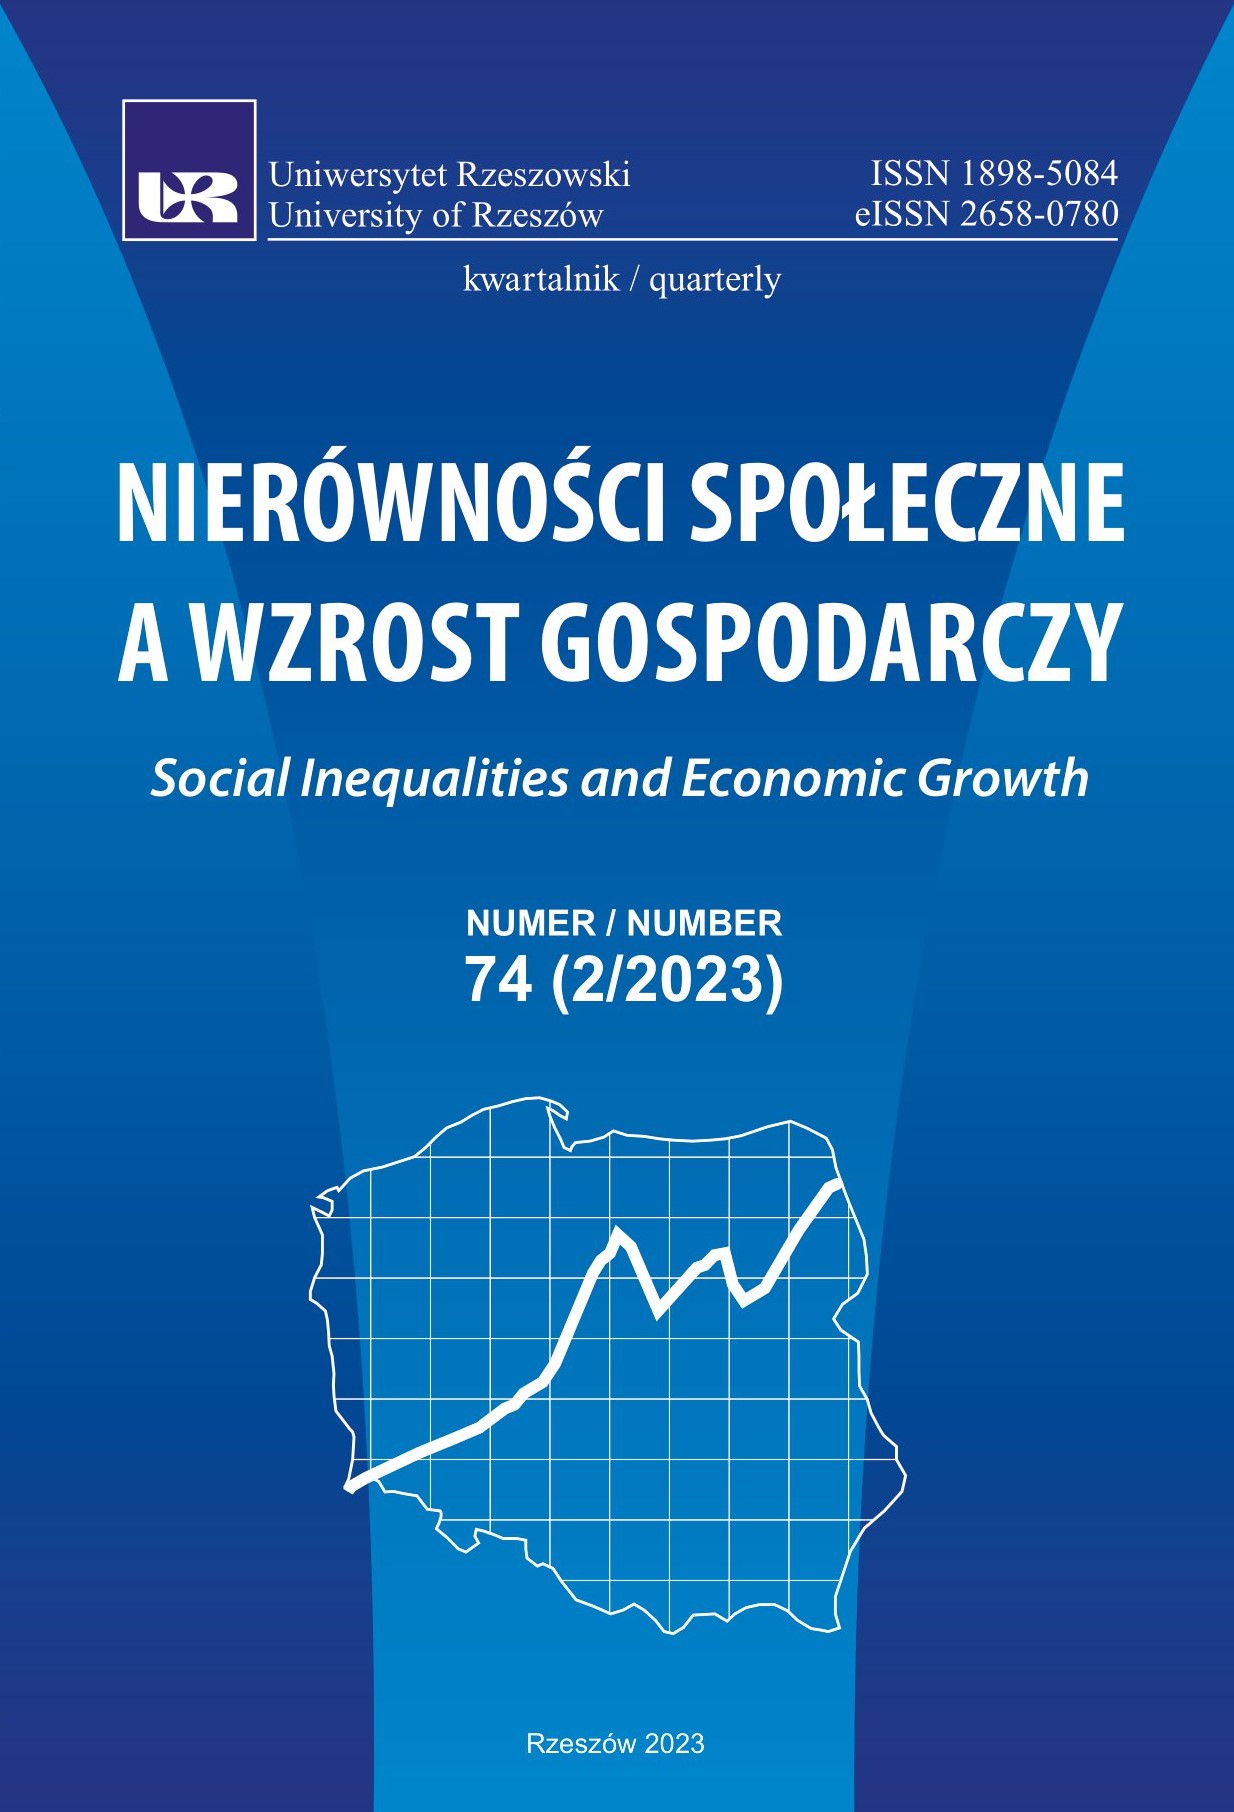 Wpływ pandemii COVID-19 na branżę turystyczną
w Polsce